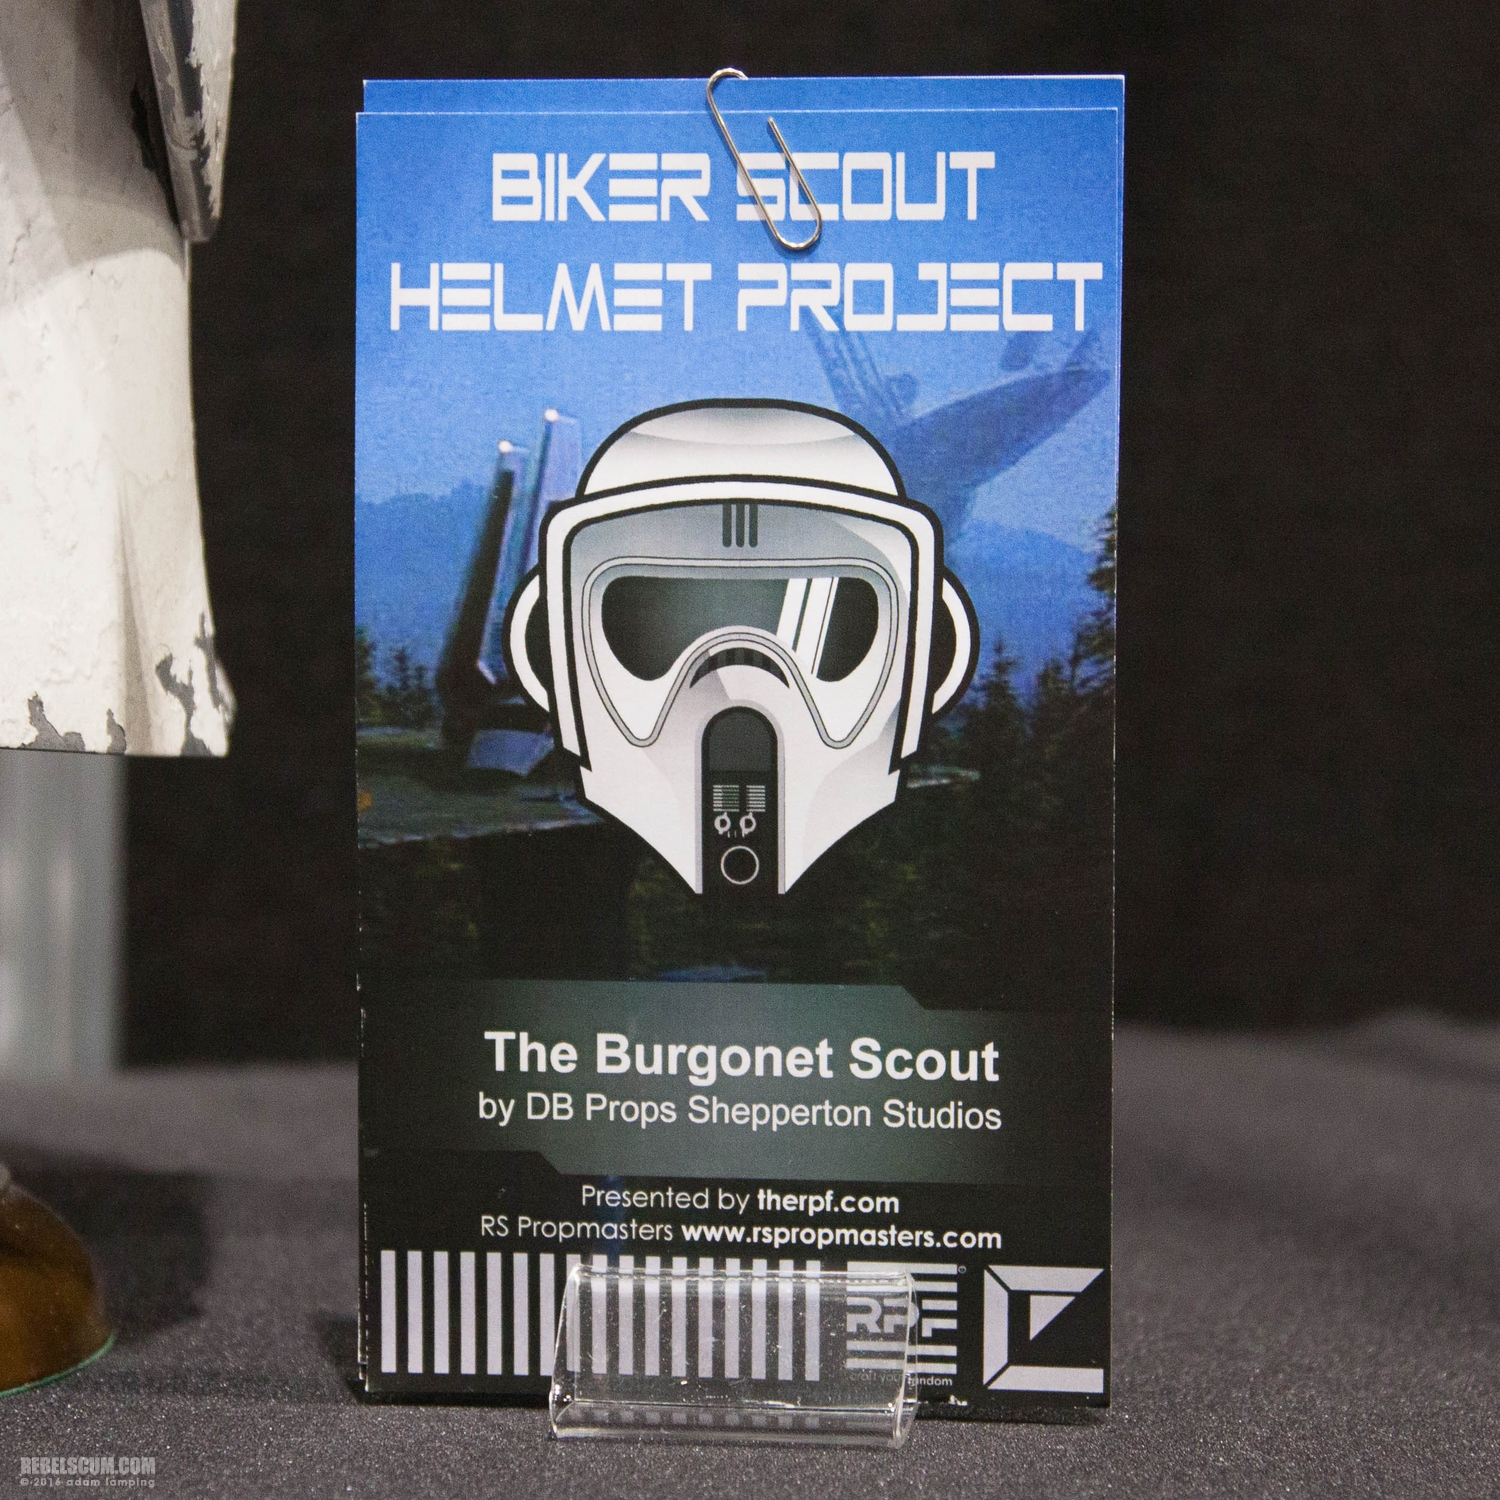 star-wars-celebration-2016-biker-scout-helmet-project-053.jpg